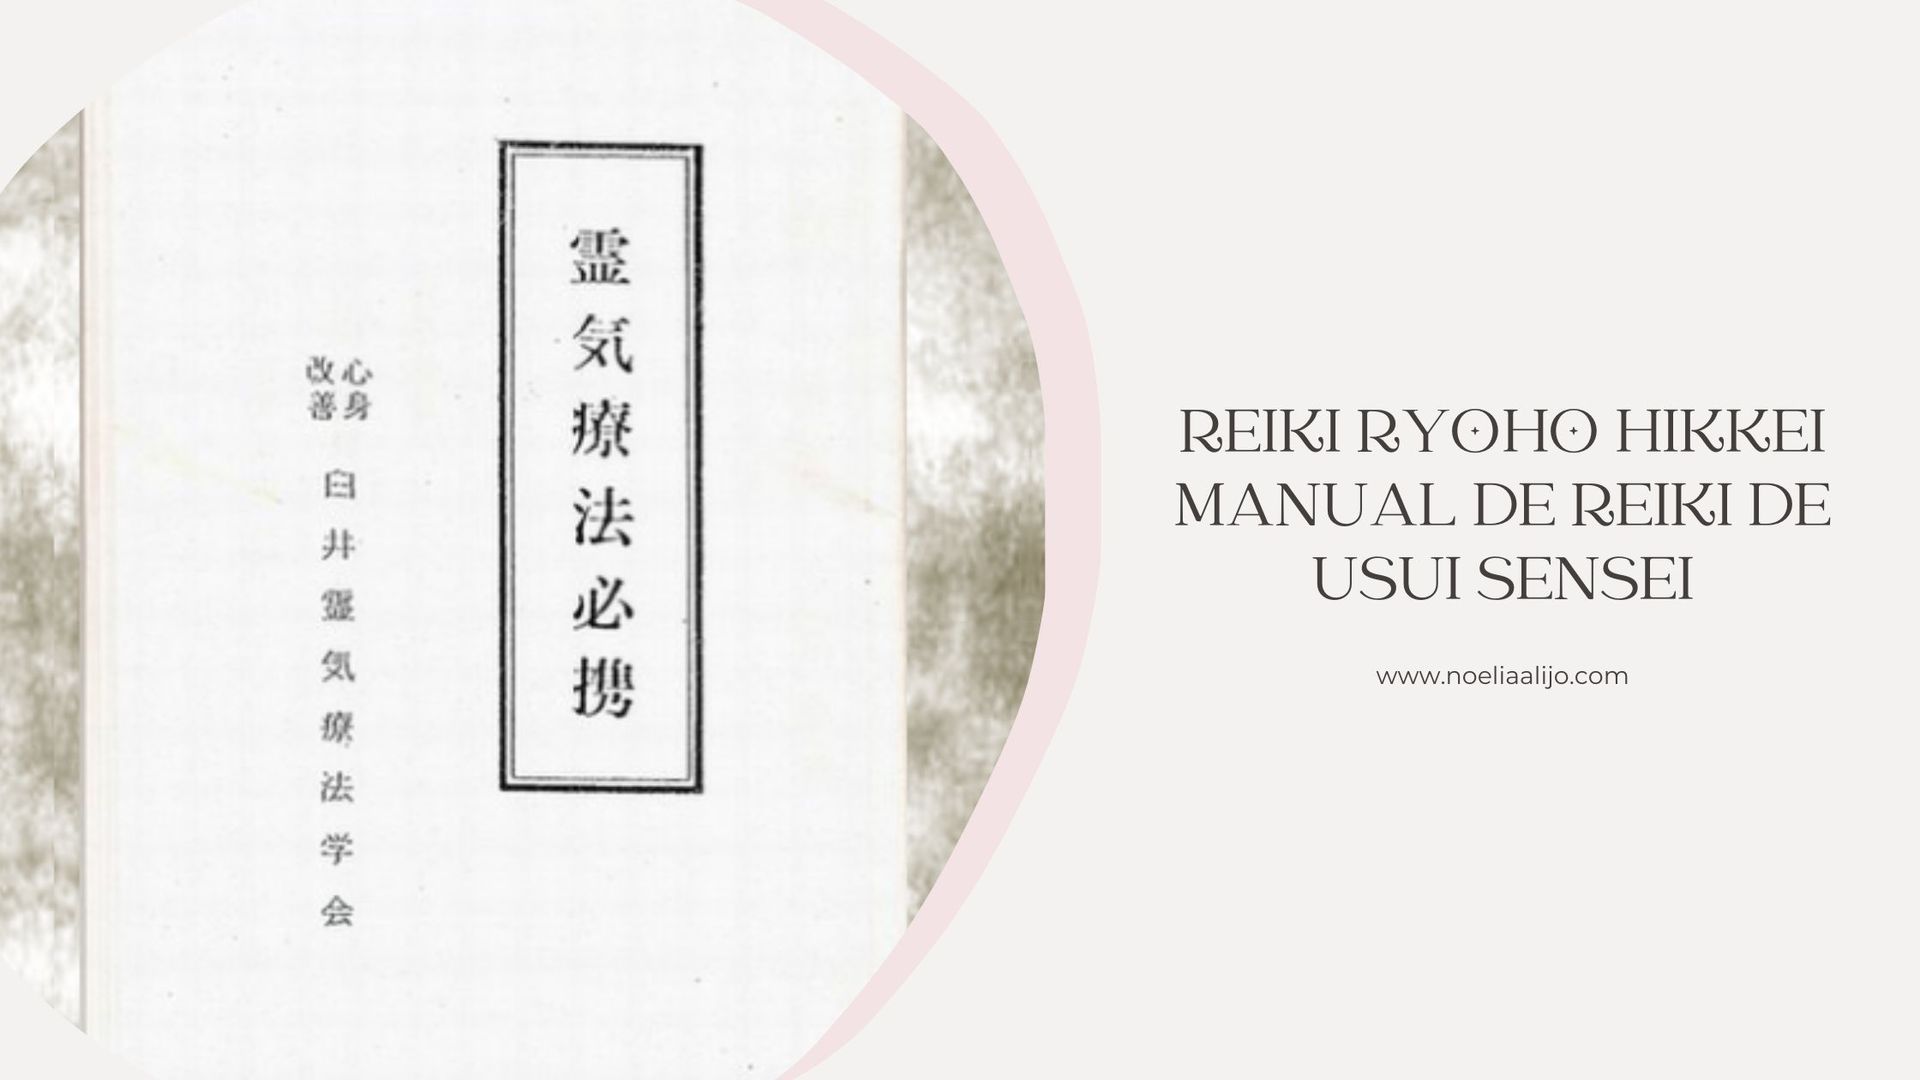 Reiki Ryoho Hikkei manual de reiki de Mikao Usui